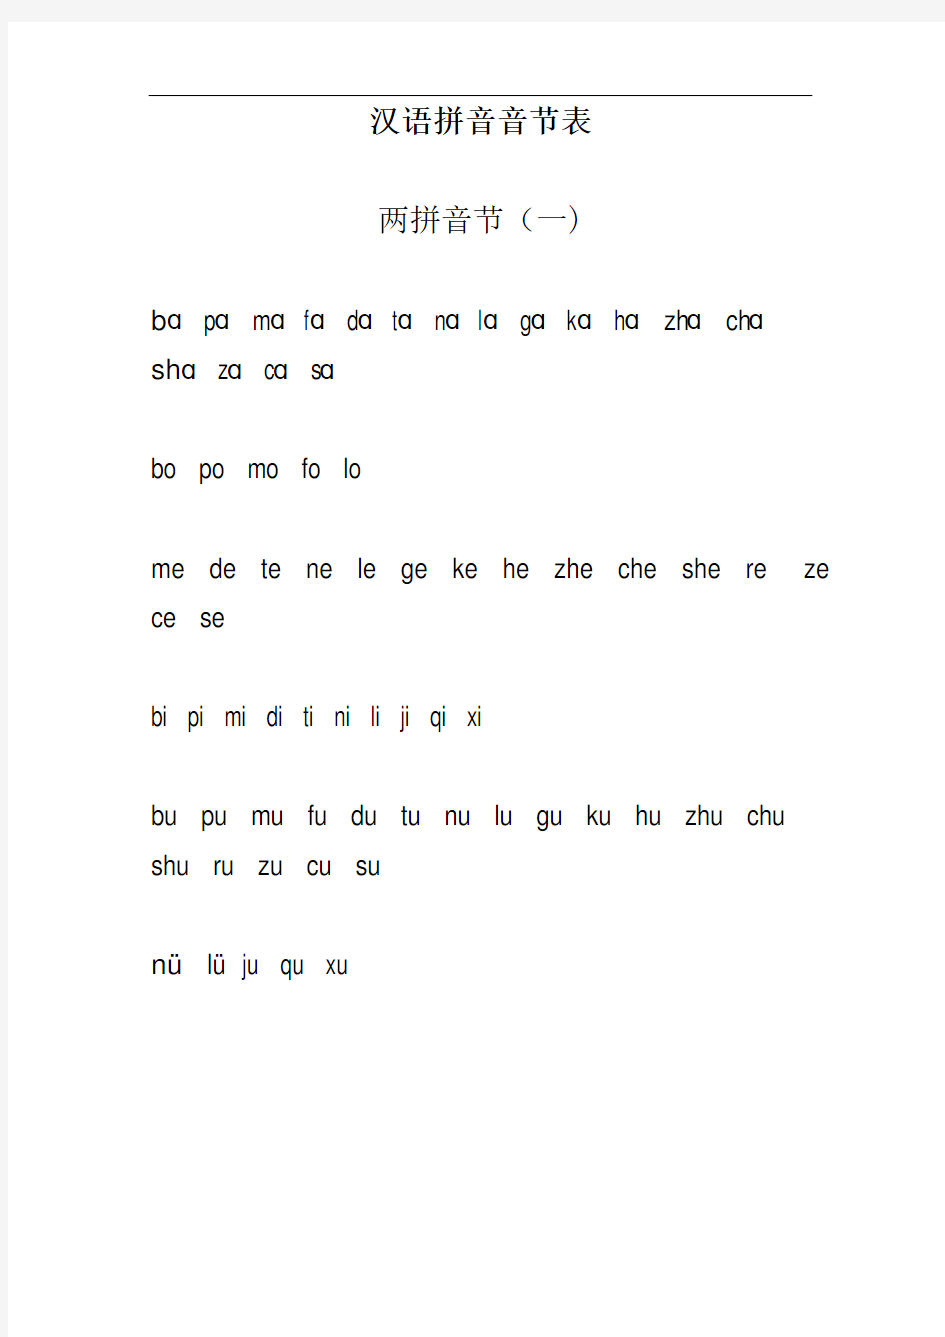 汉语拼音音节表全